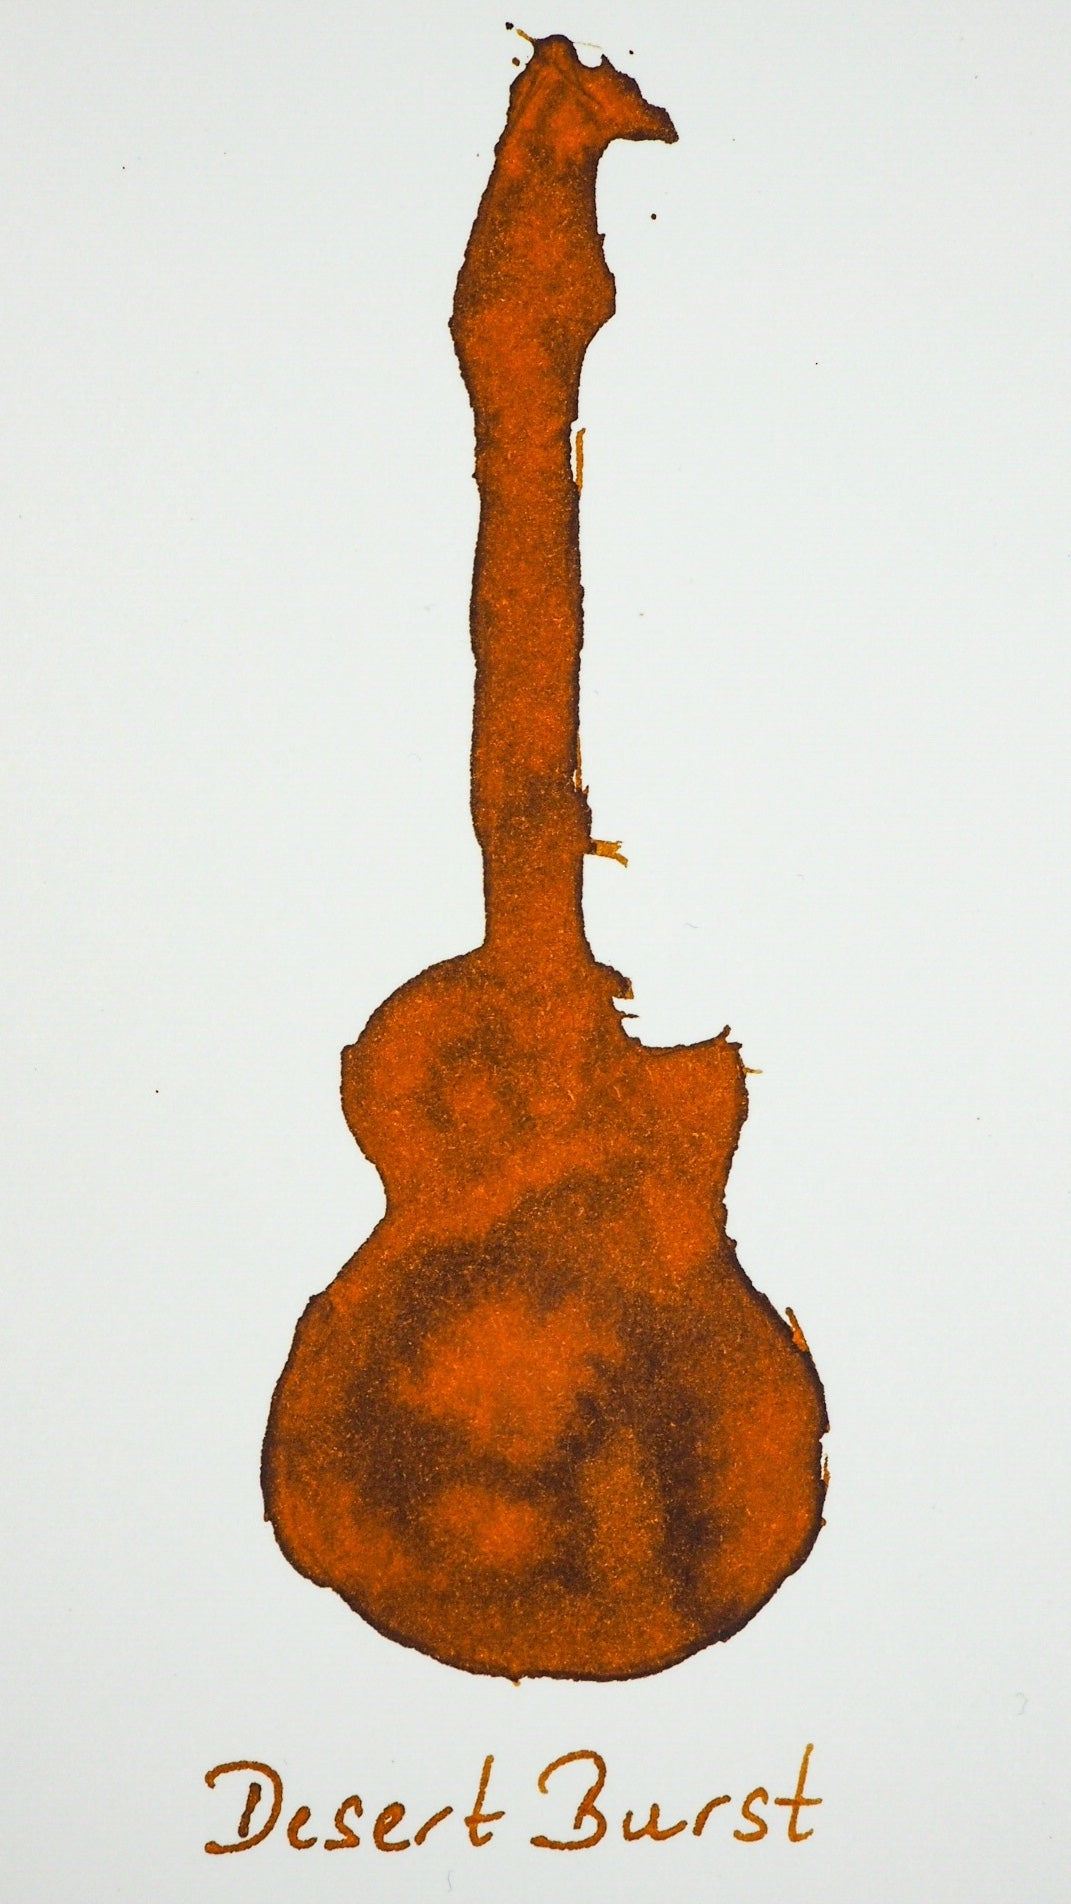 Swatch von Diamine Desert Burst in Form einer Gitarre.